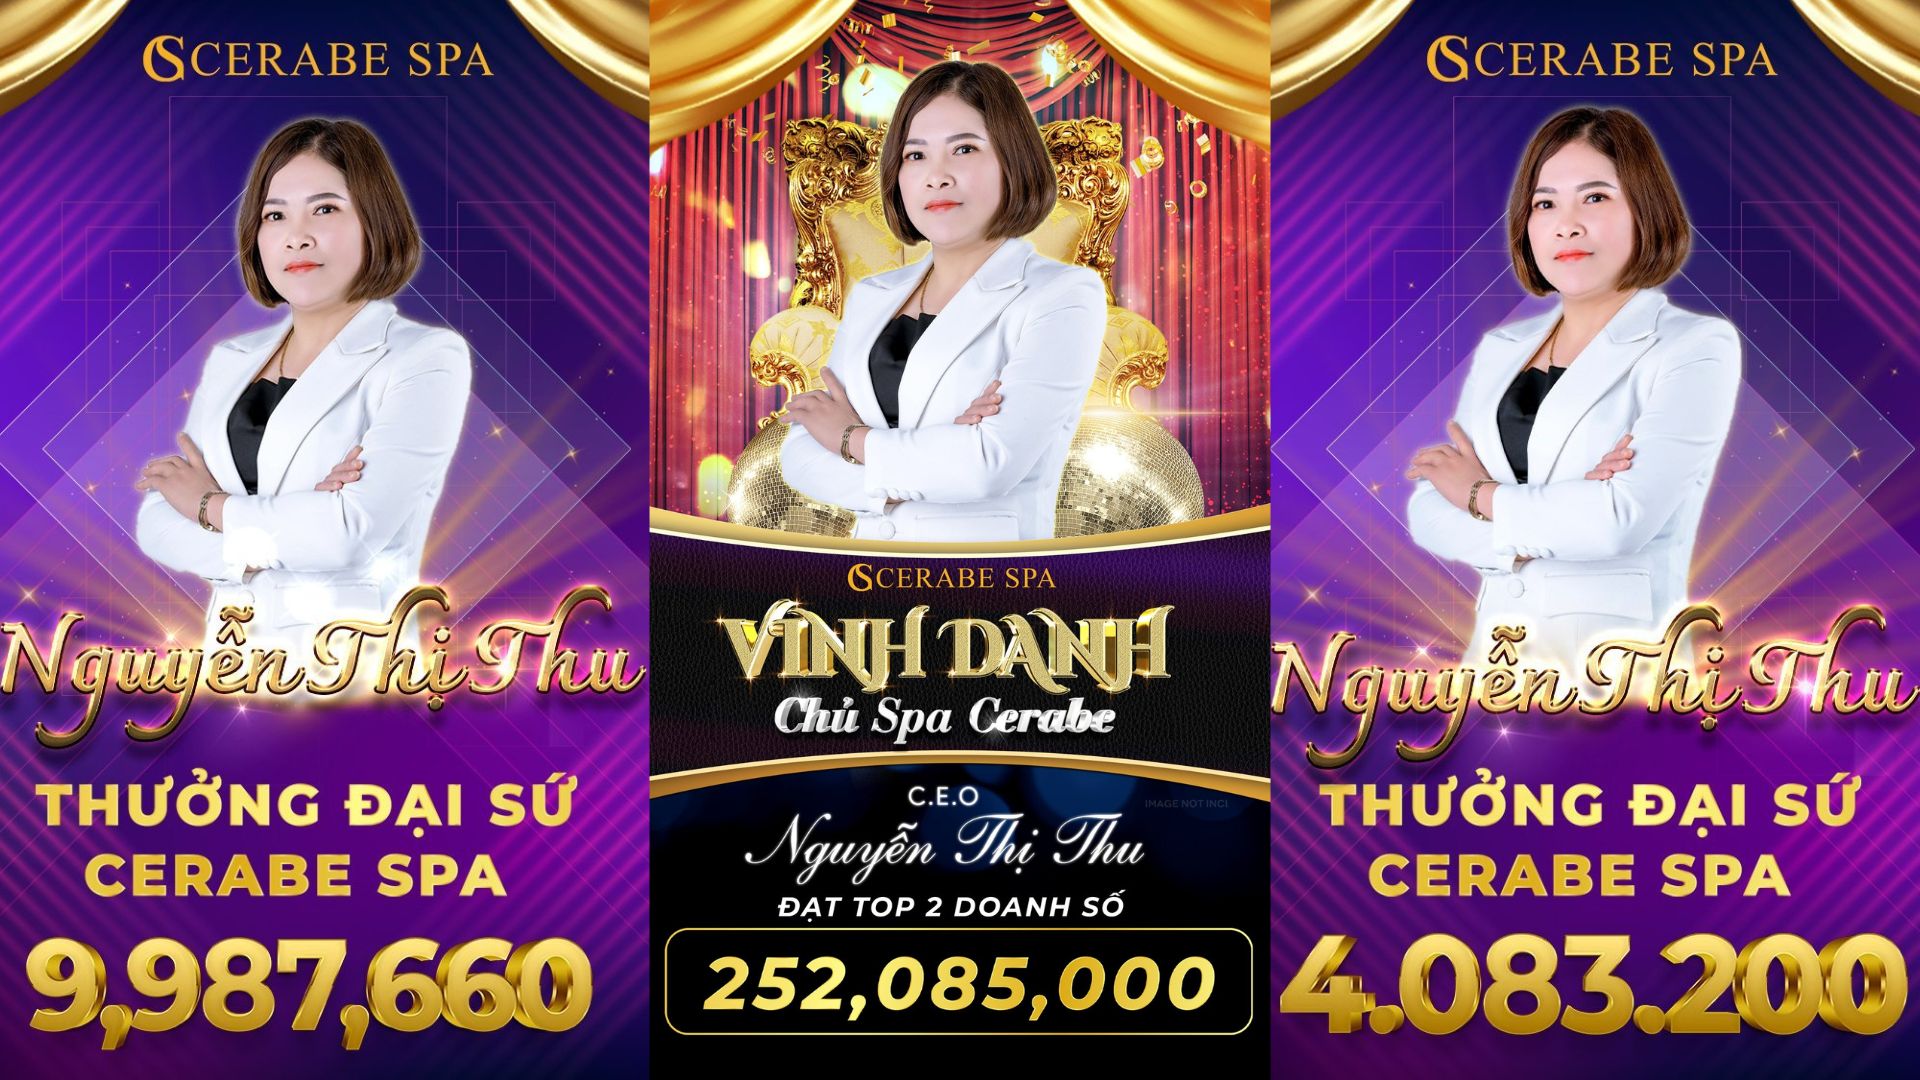 Giám đốc Spa Cerabe Nguyễn Thị Thu luôn nằm trong TOP có doanh số cao và liên tục thưởng thường doanh số